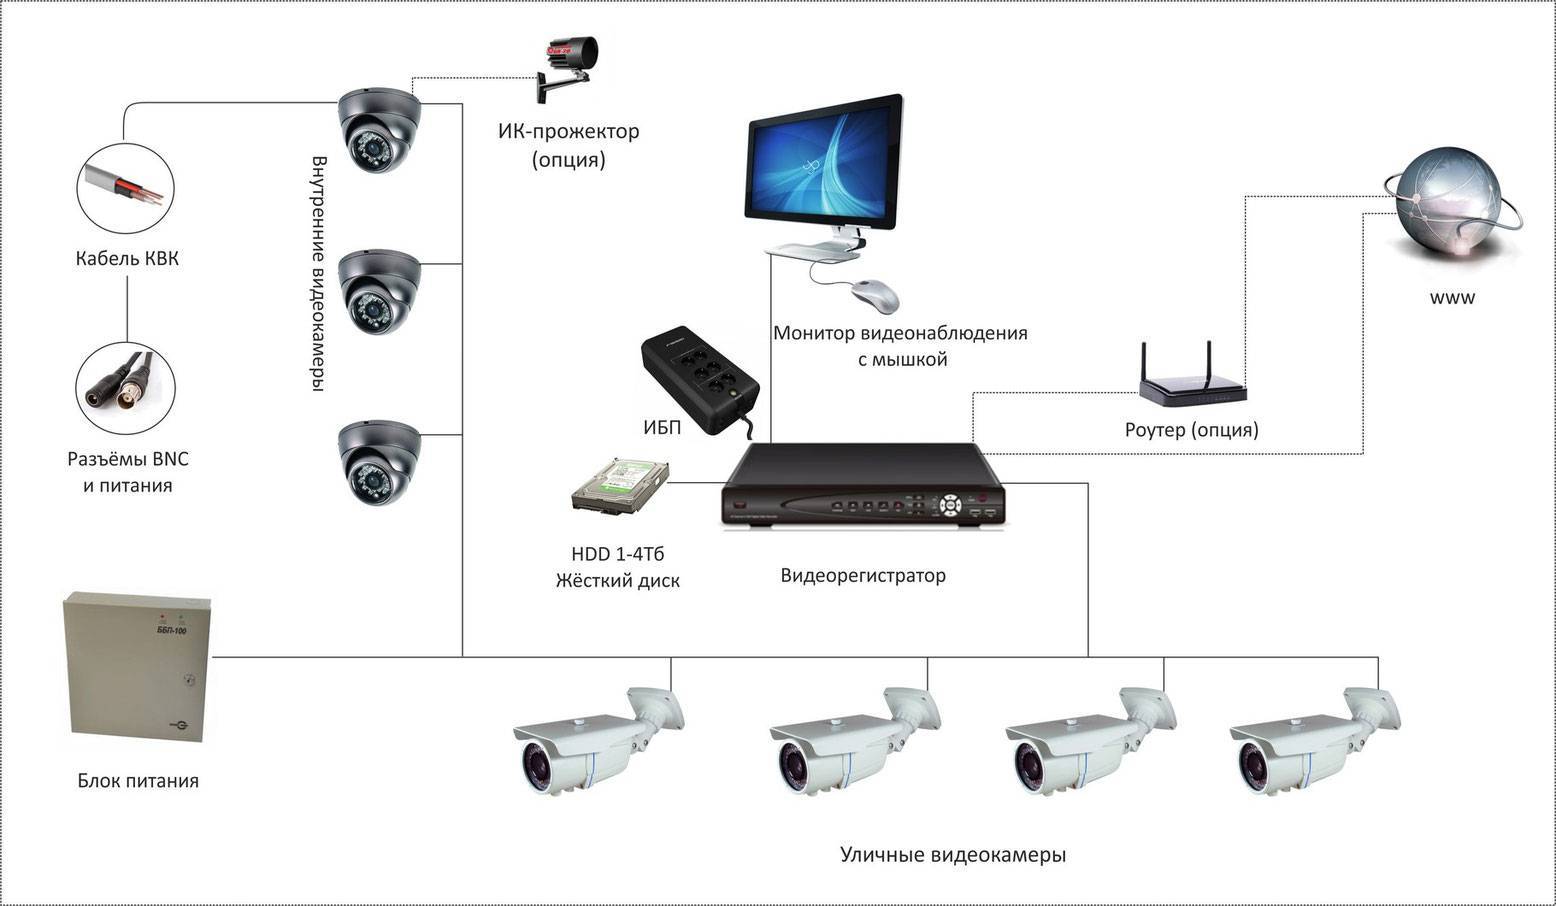 Системы видеонаблюдения для частного дома - как правильно выбрать подходящую?